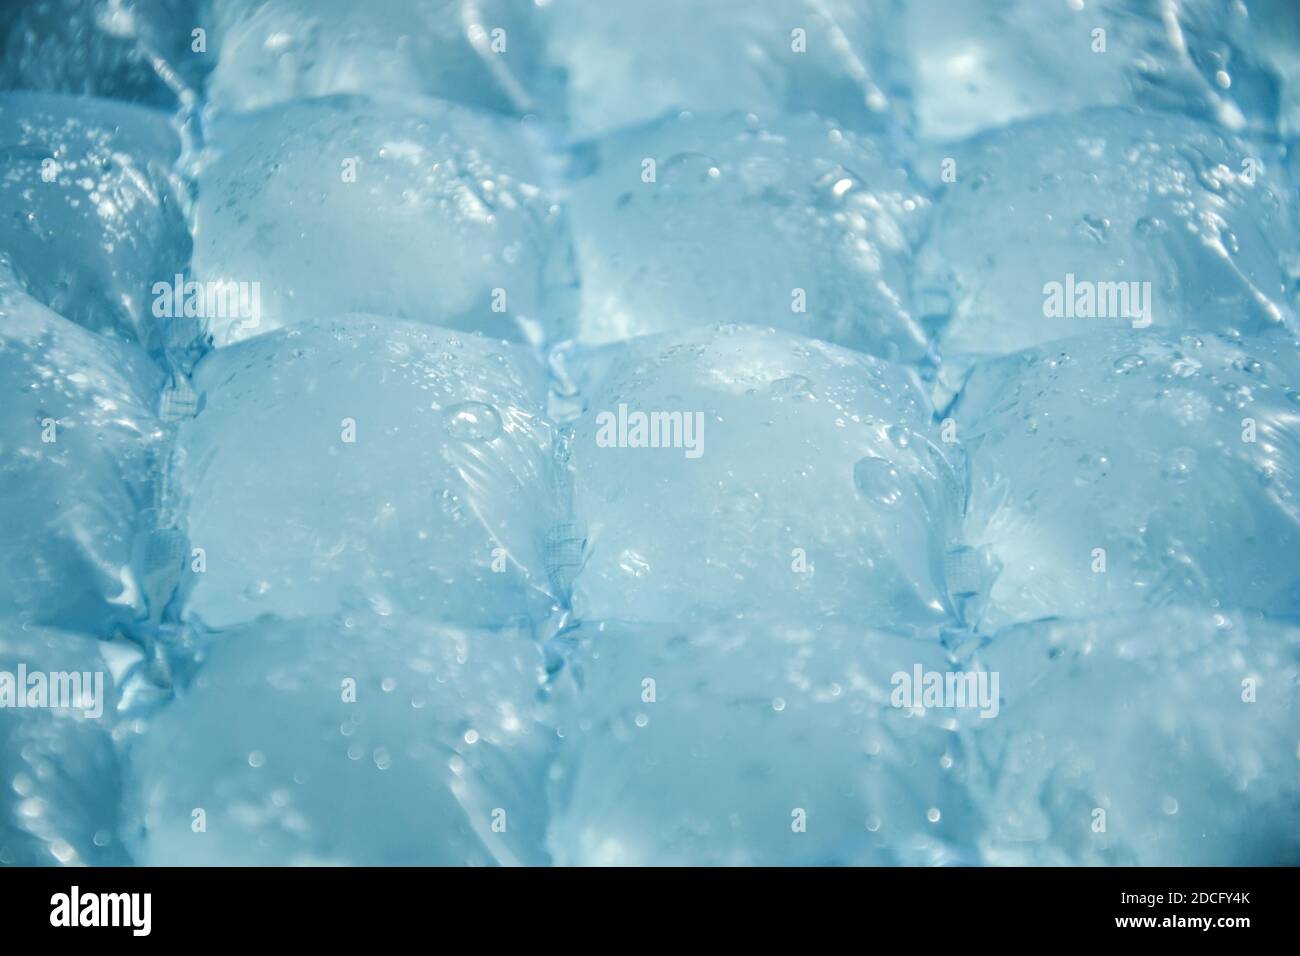 De dónde proviene el agua de bolsas de cubitos de hielo?